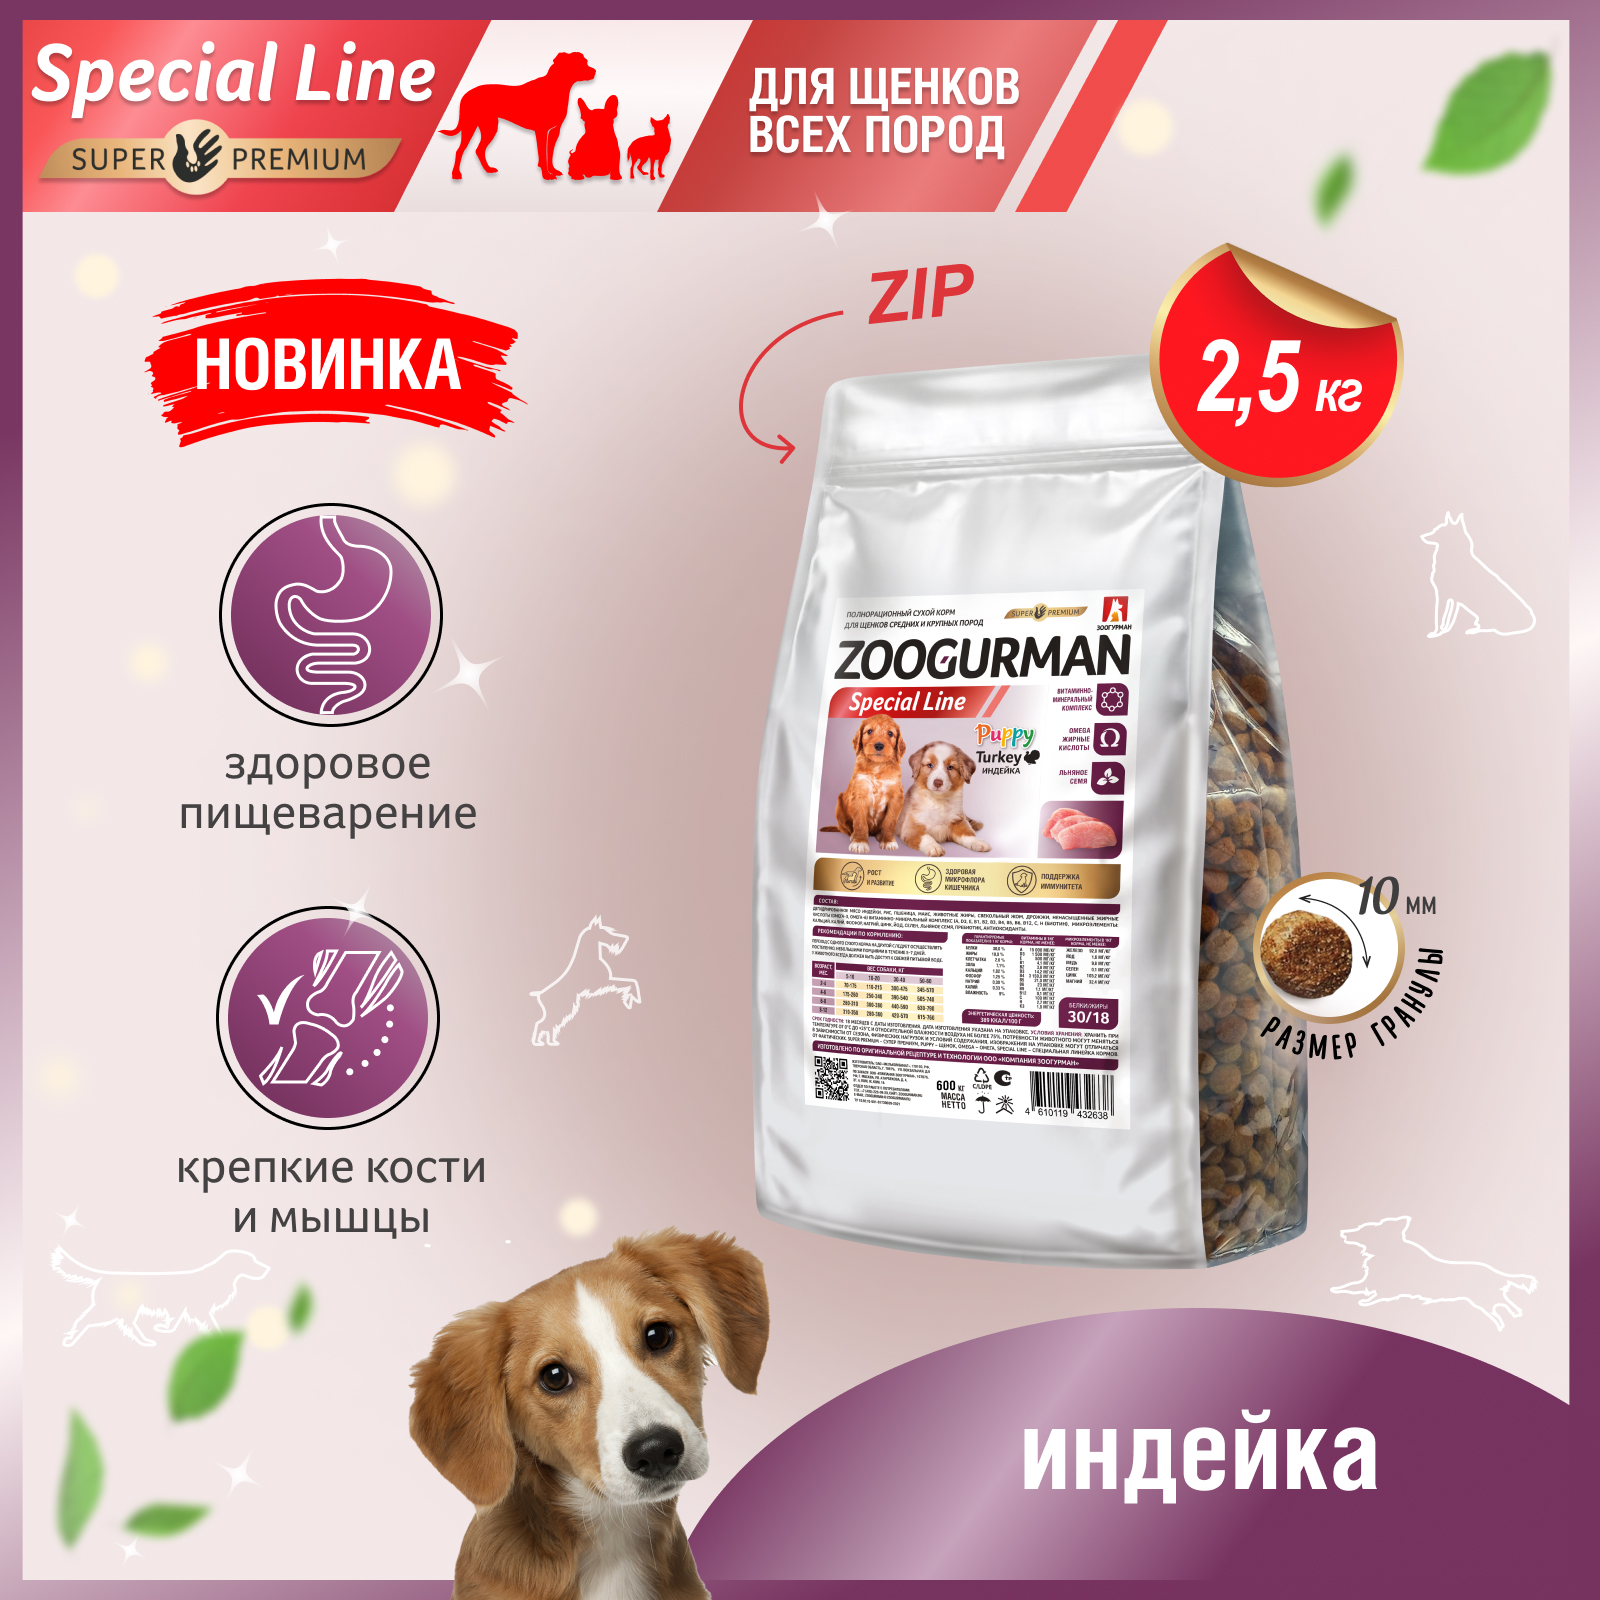 Сухой корм для щенков Zoogurman Puppy Special line, индейка, 2,5кг